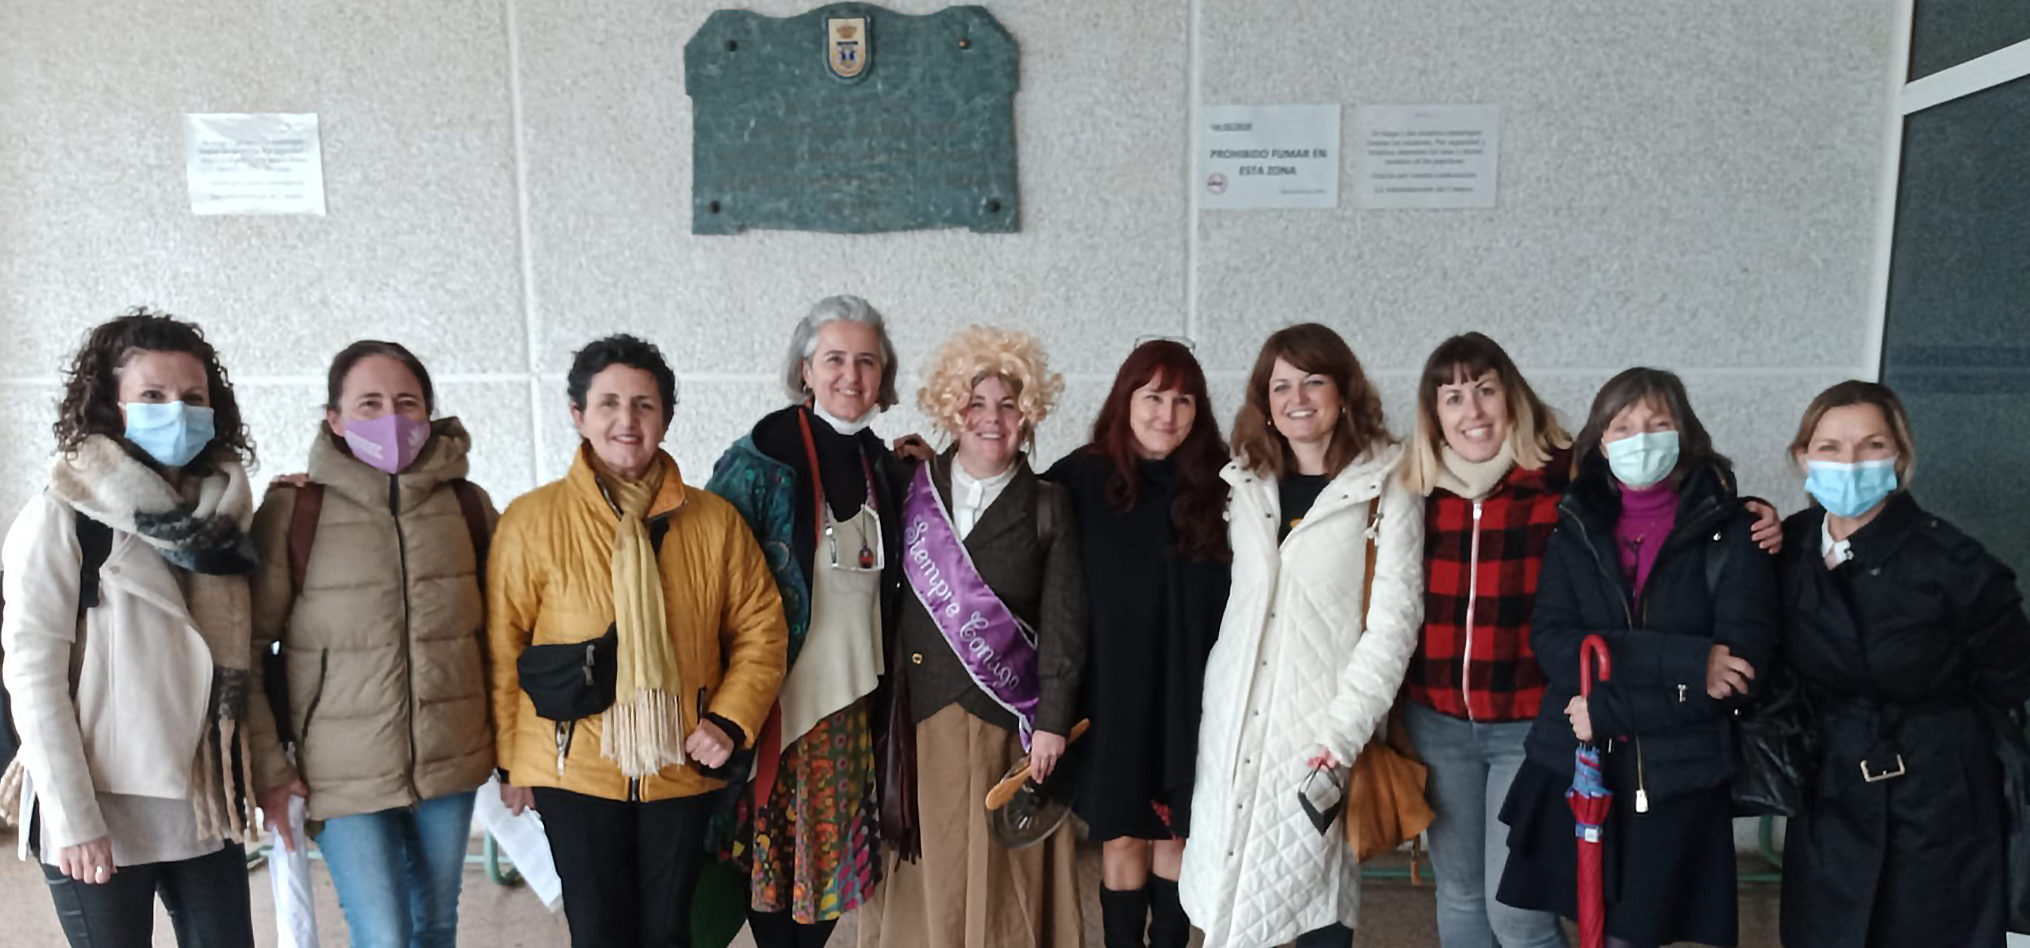 La mesa ‘Creadoras y artistas feministas: perspectivas diversas para la igualdad’ se desarrolla en el Campus de Puerto Real